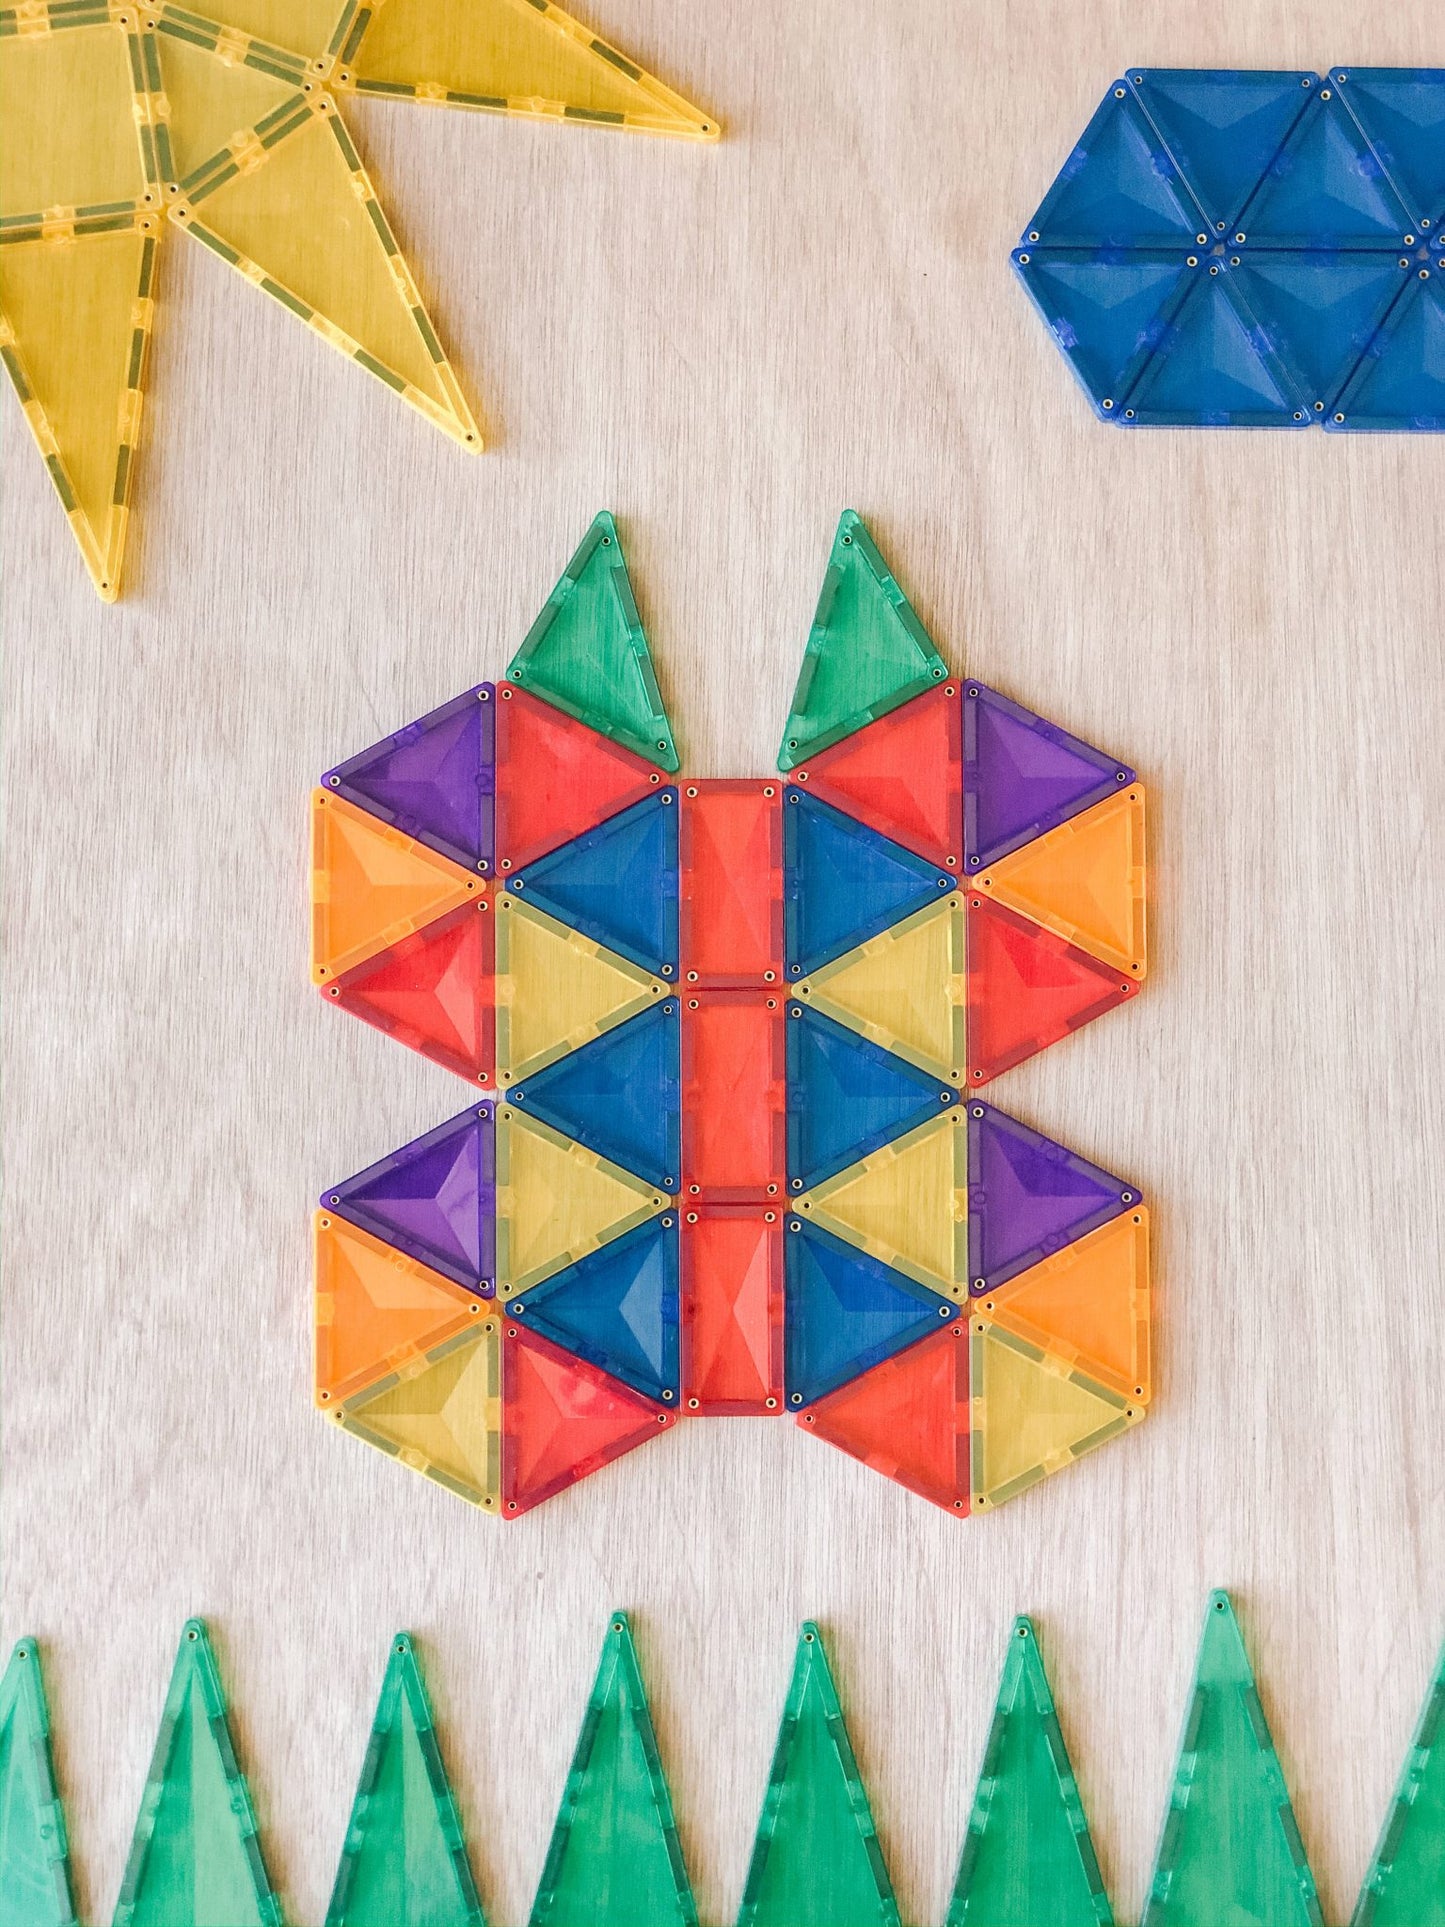 60 Piece Rainbow Starter Pack - Connetix Tiles